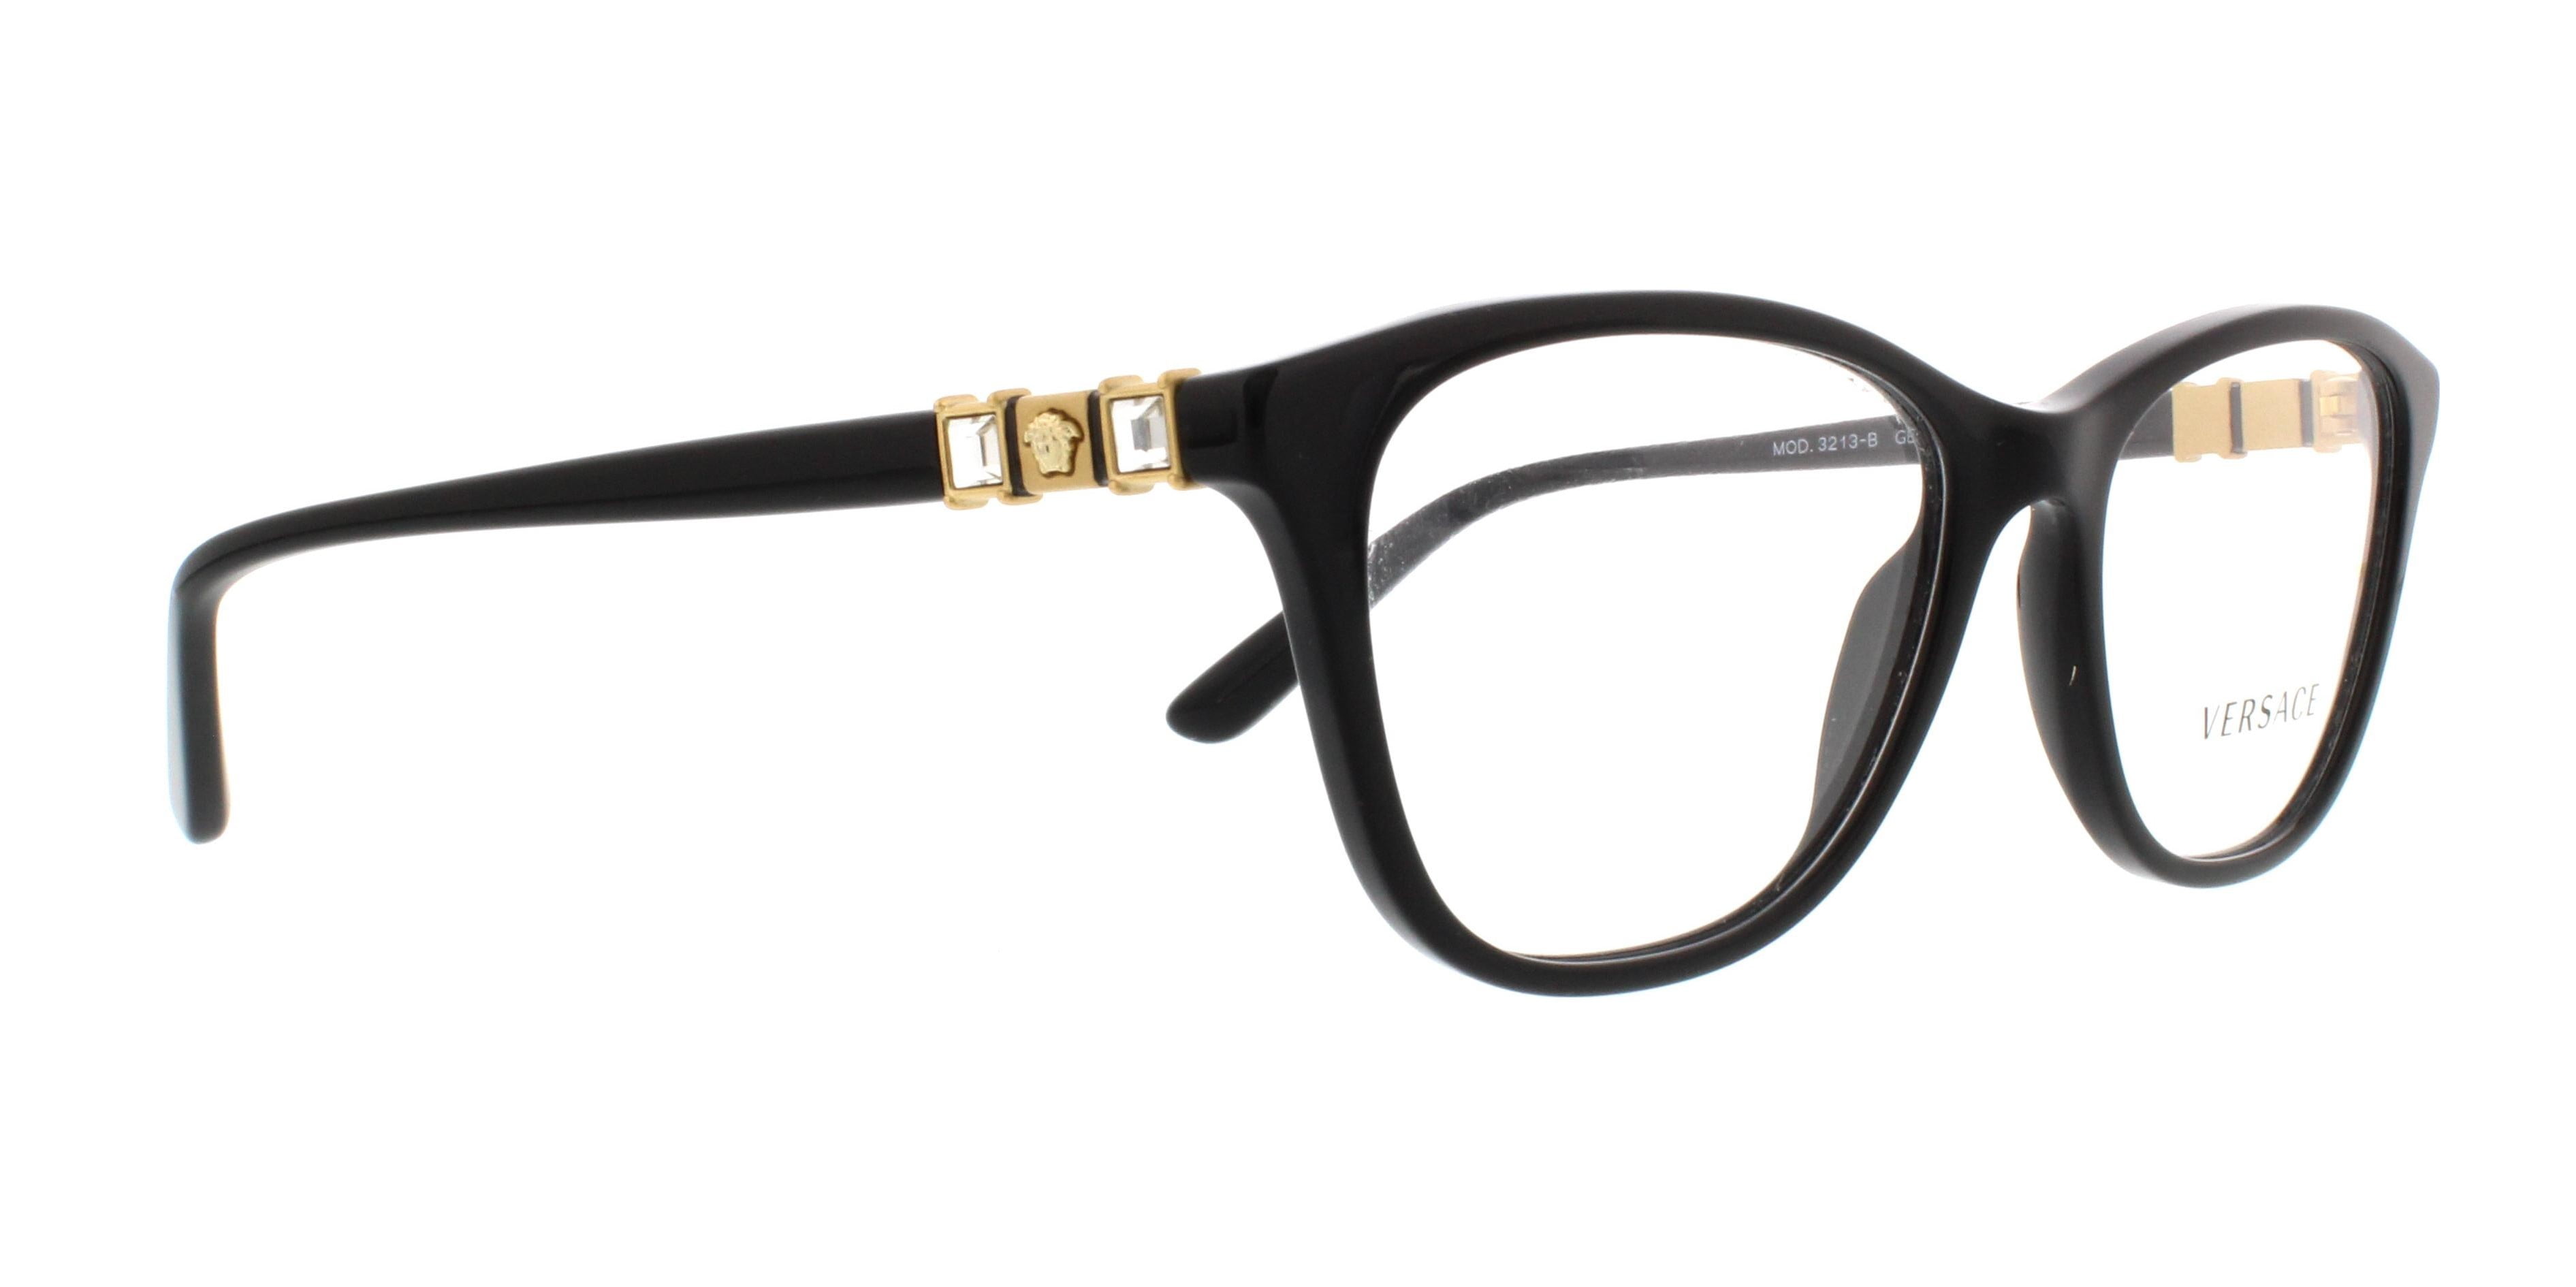 VERSACE Eyeglasses VE 3213B GB1 Black 